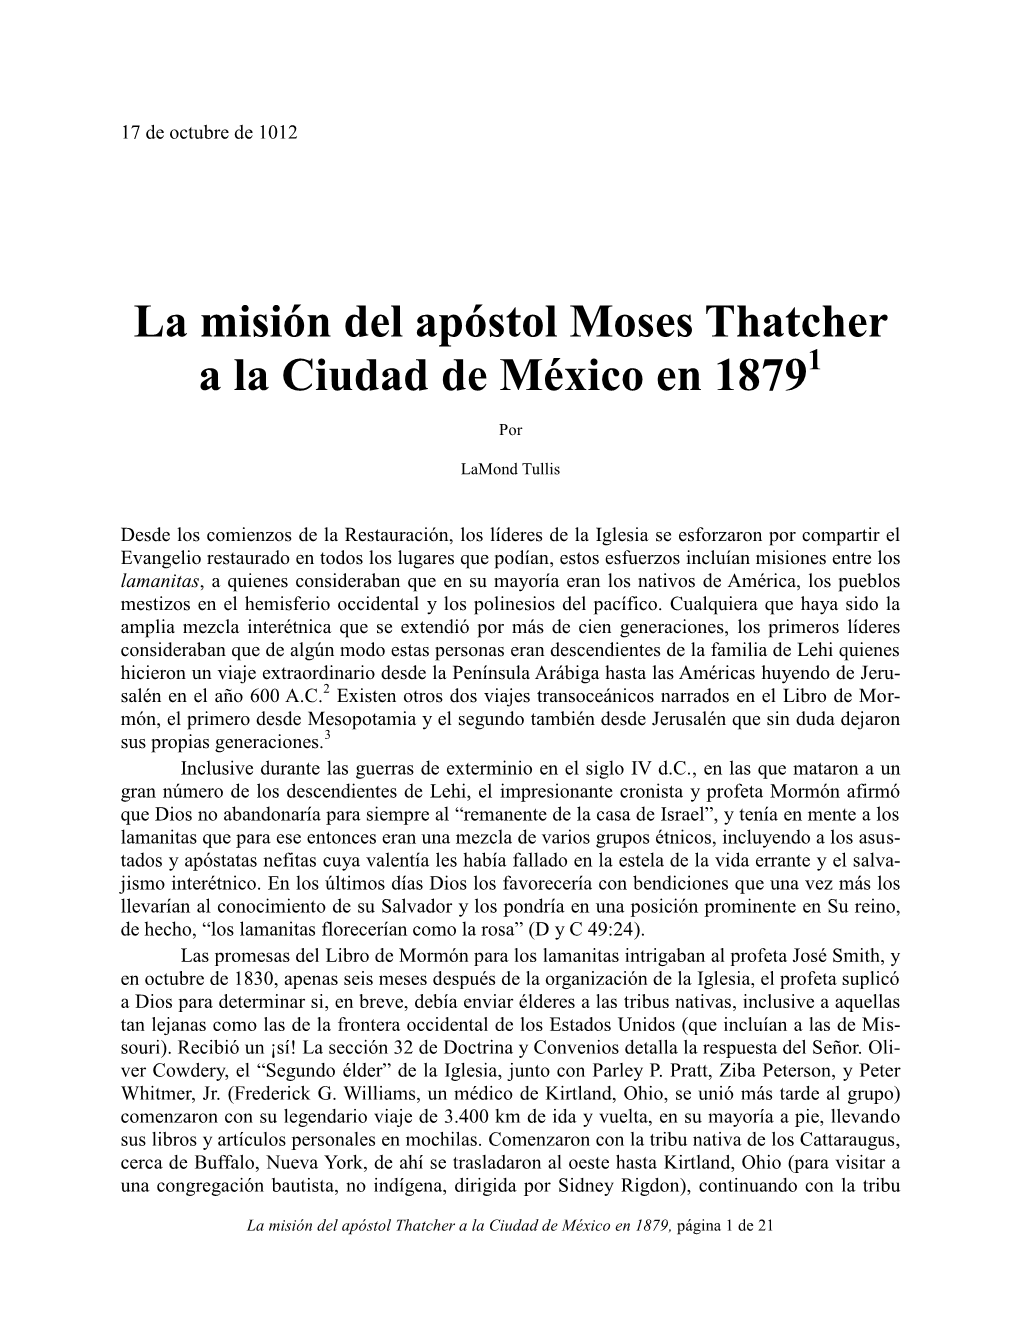 La Misión Del Apóstol Moses Thatcher a La Ciudad De México En 18791